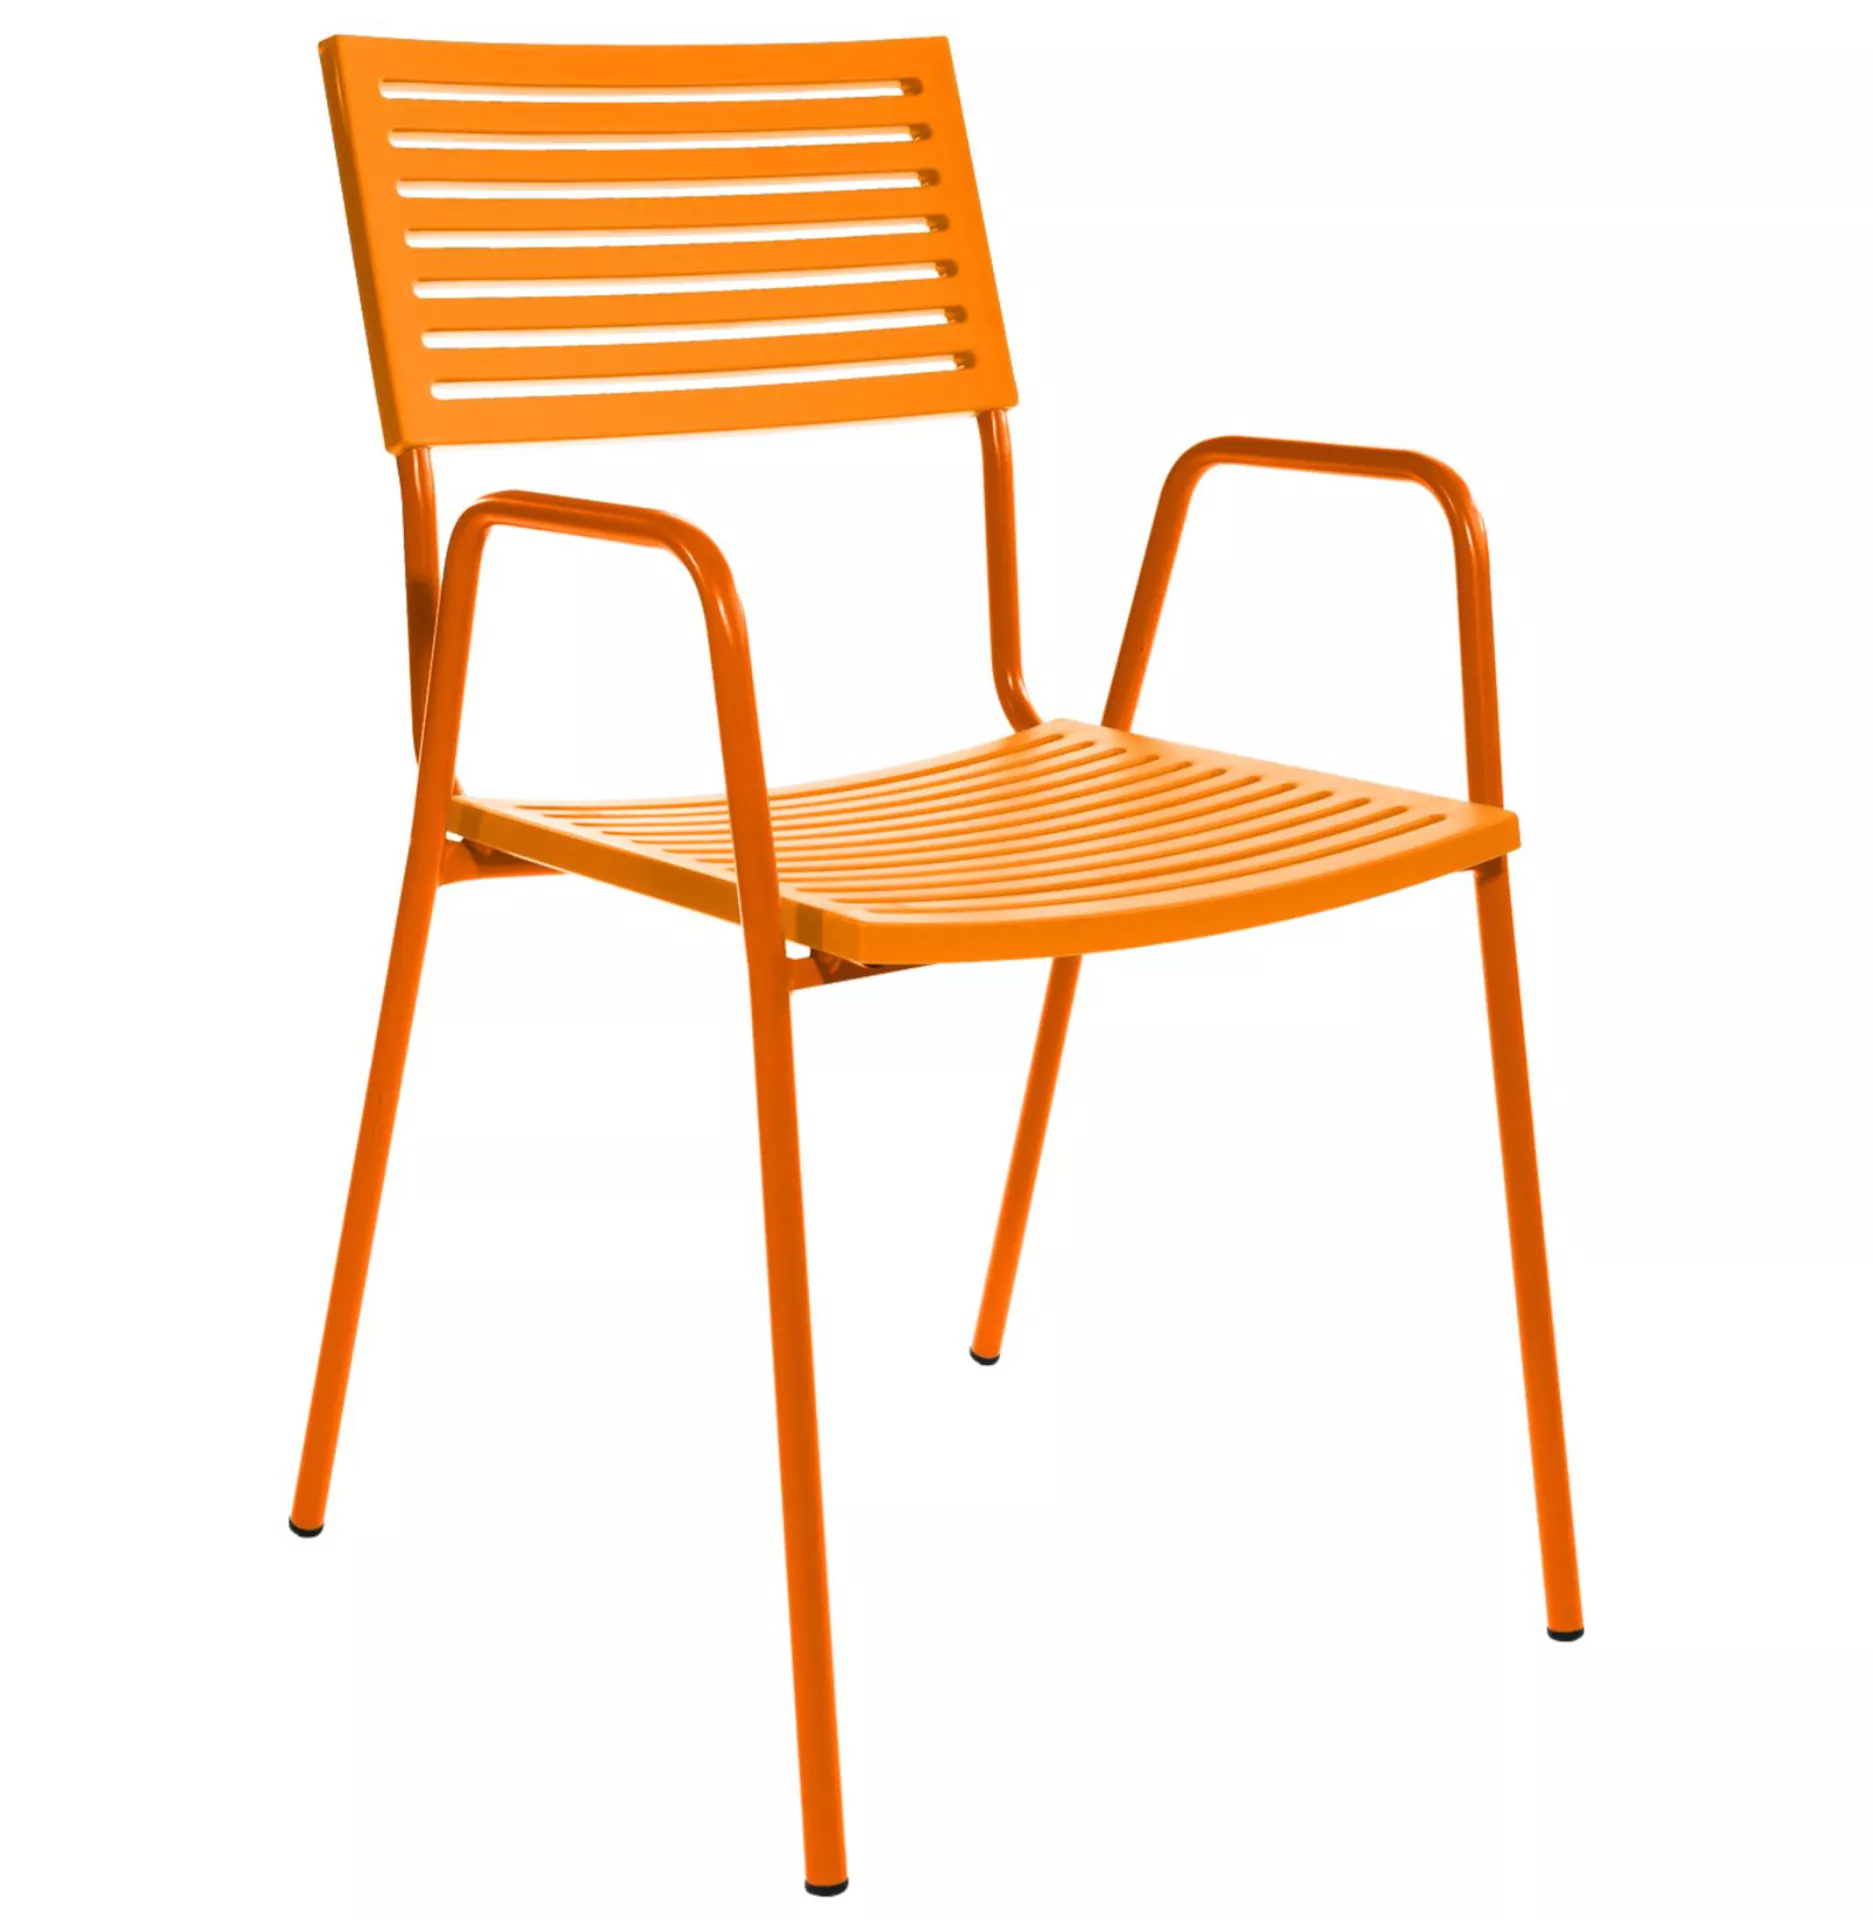 Gartenstuhl Lamello mit Armlehne Schaffner / Farbe: Orange